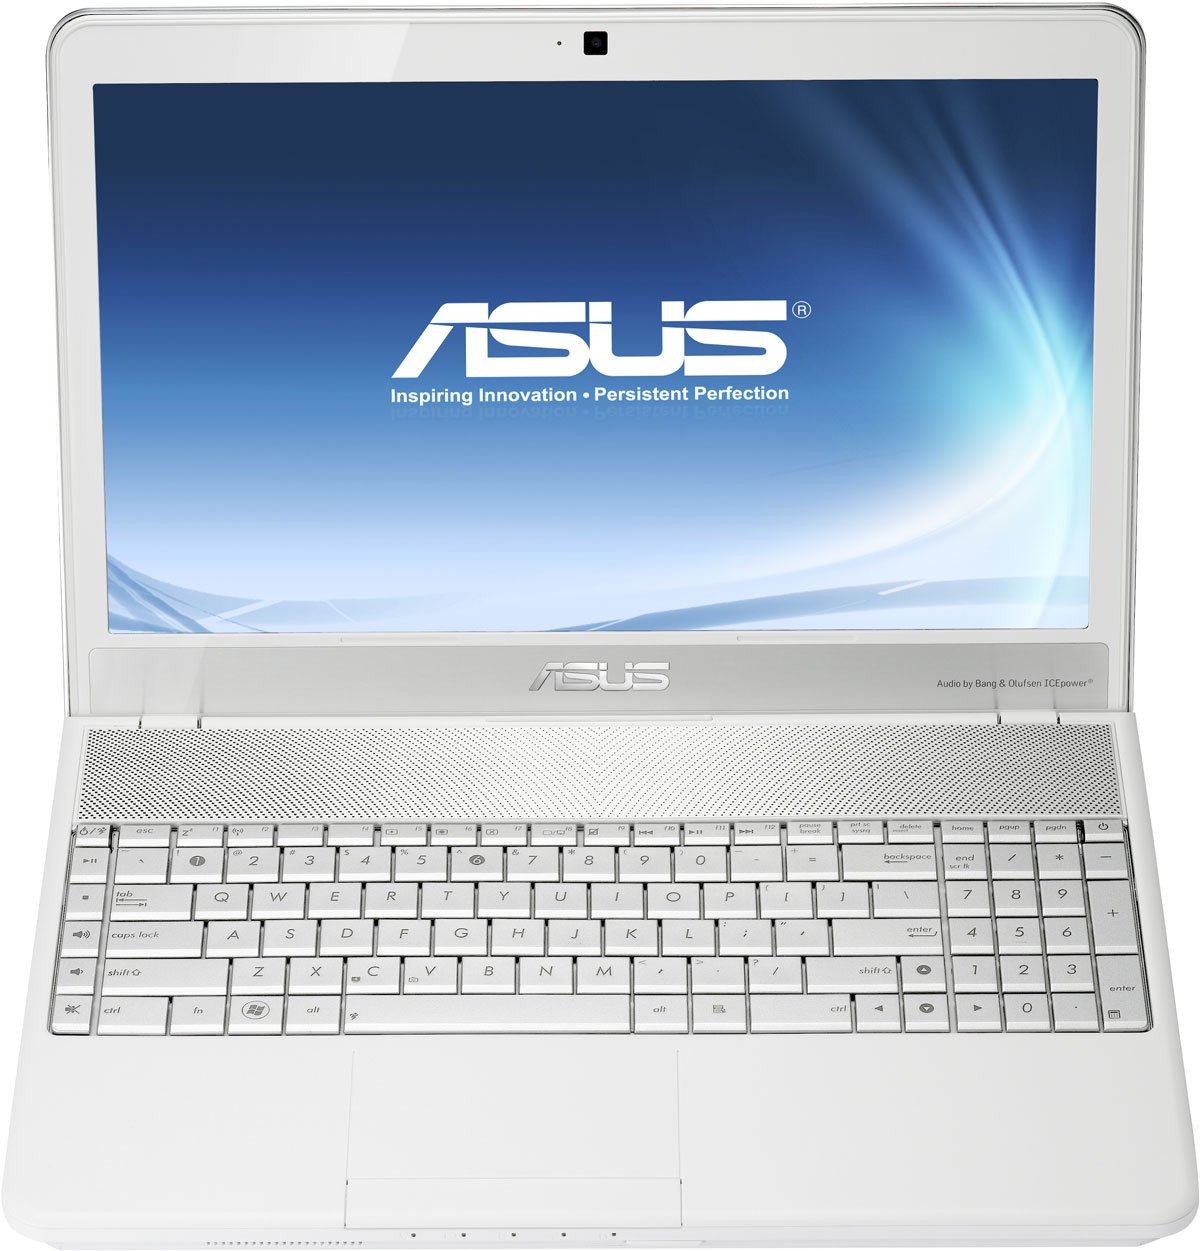 Купить Ноутбук Asus N55s